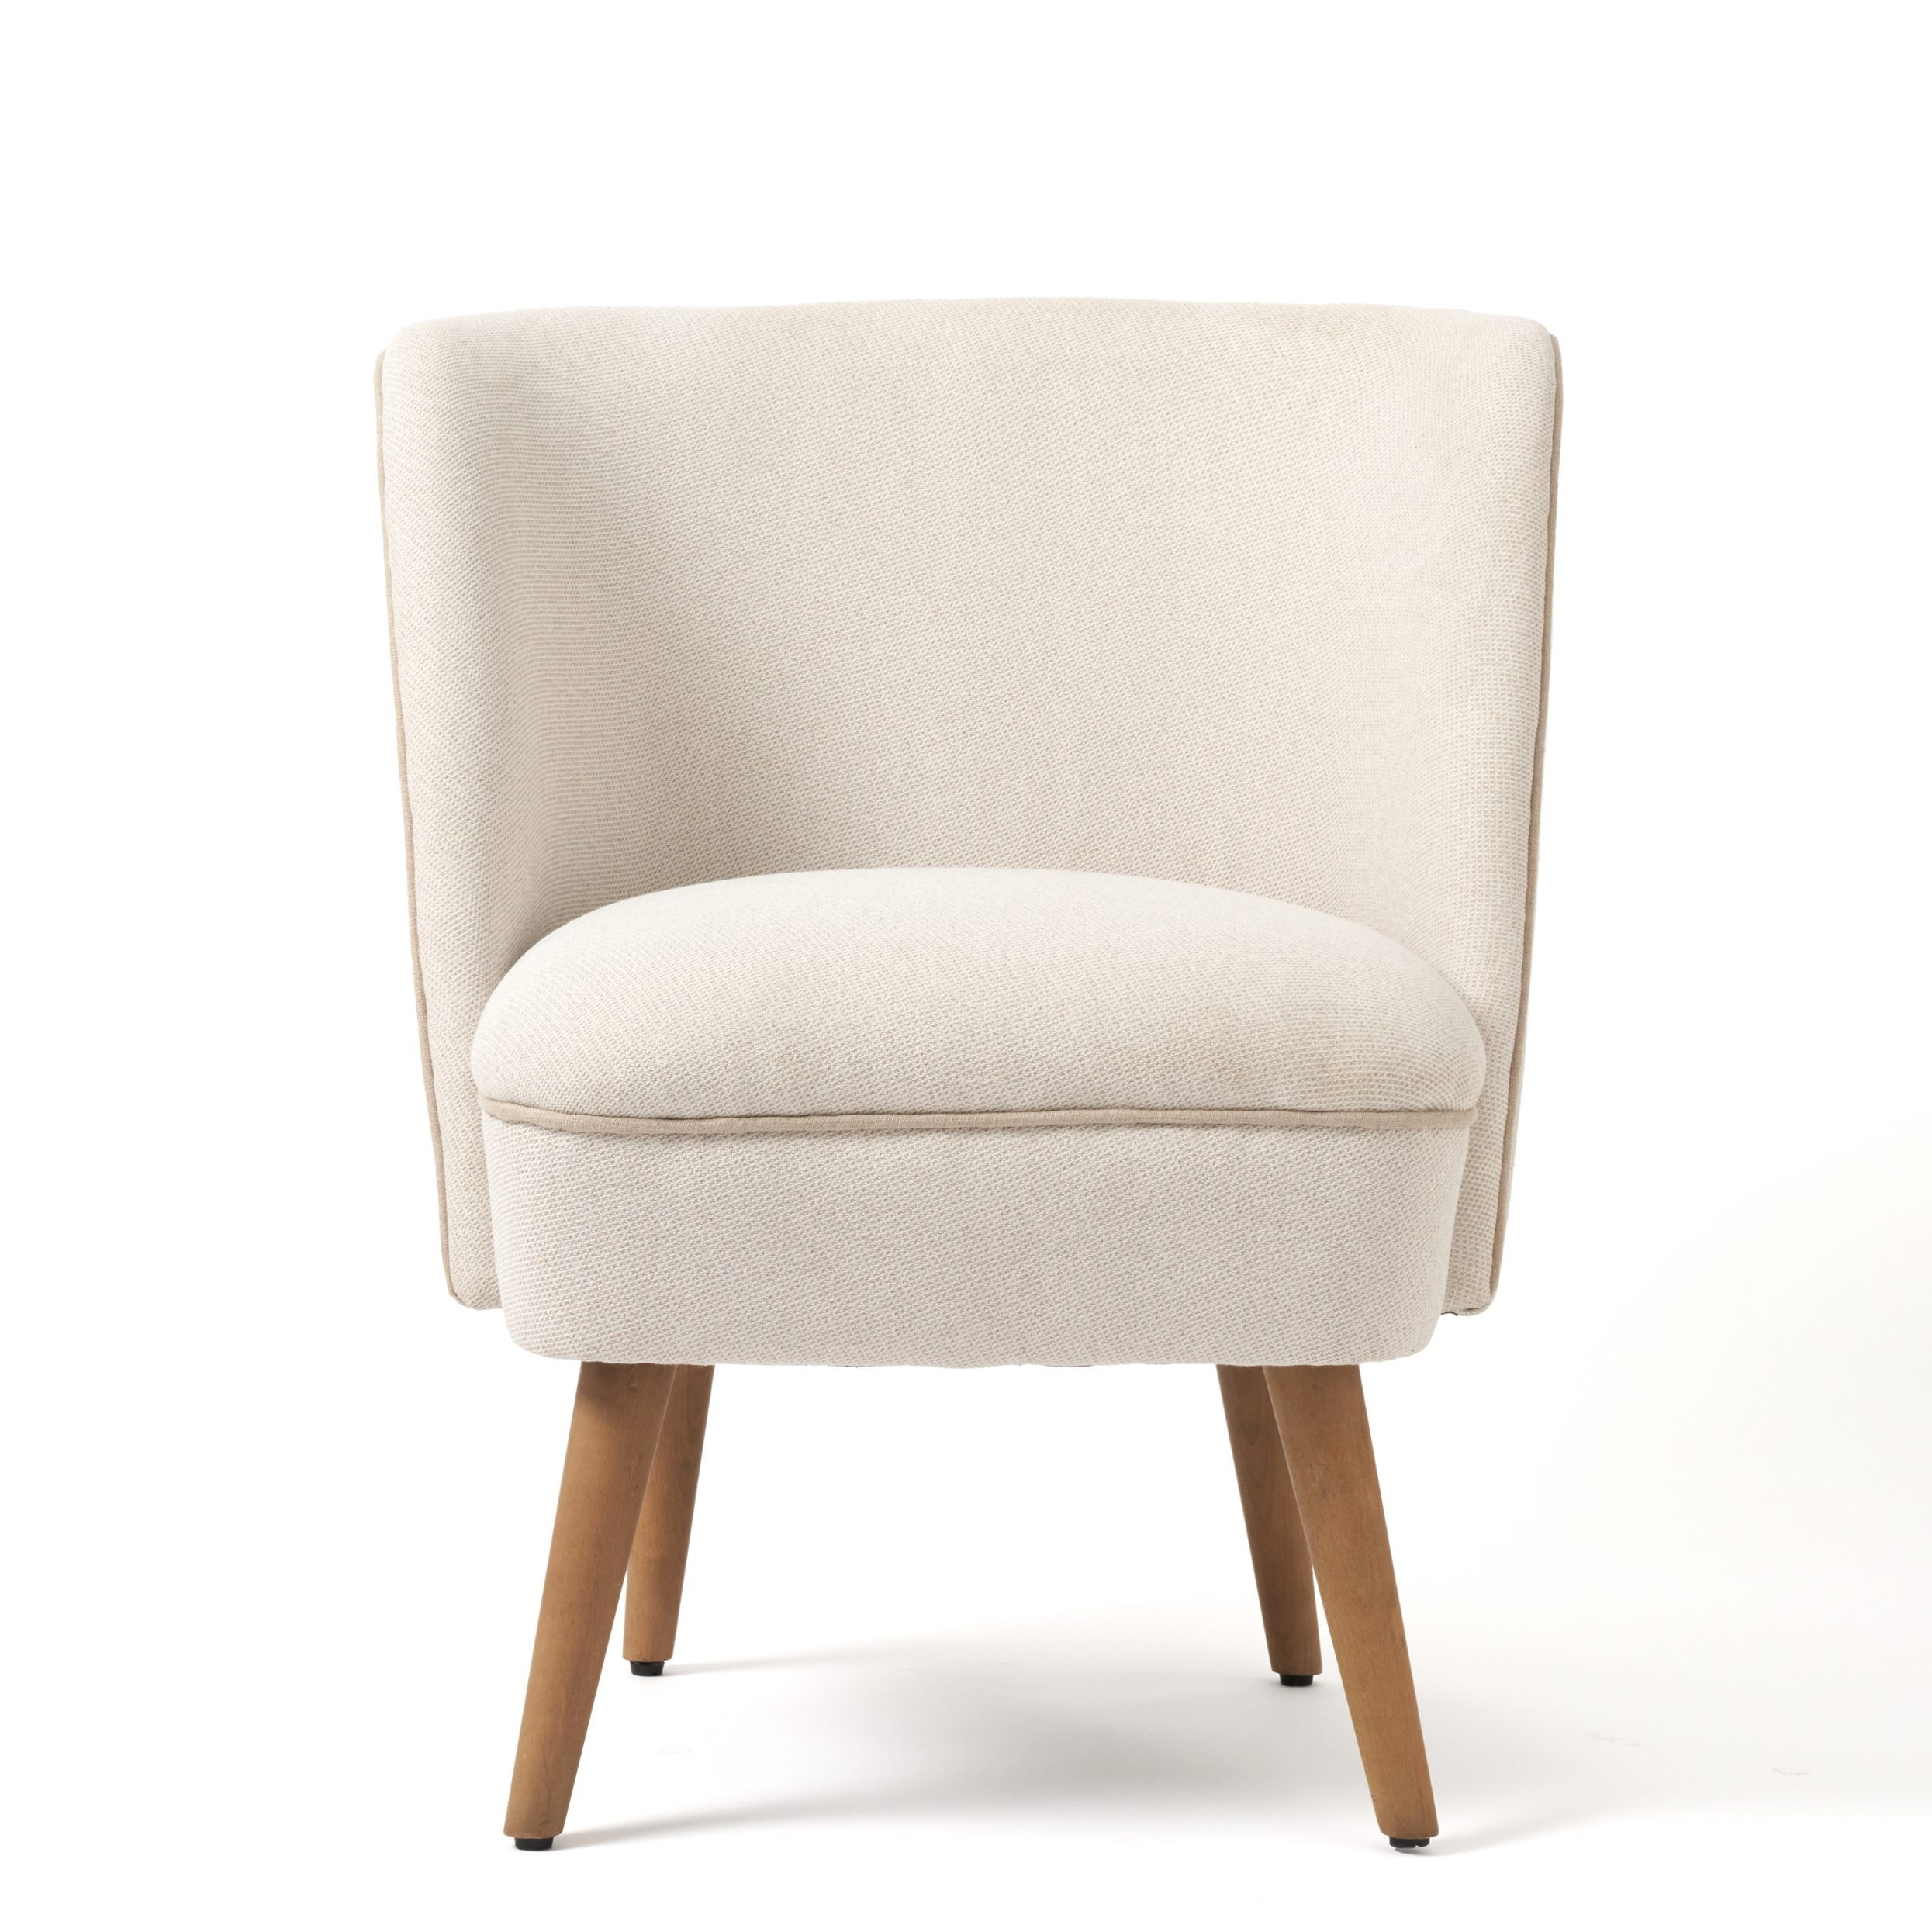 Ida Chair - image 1